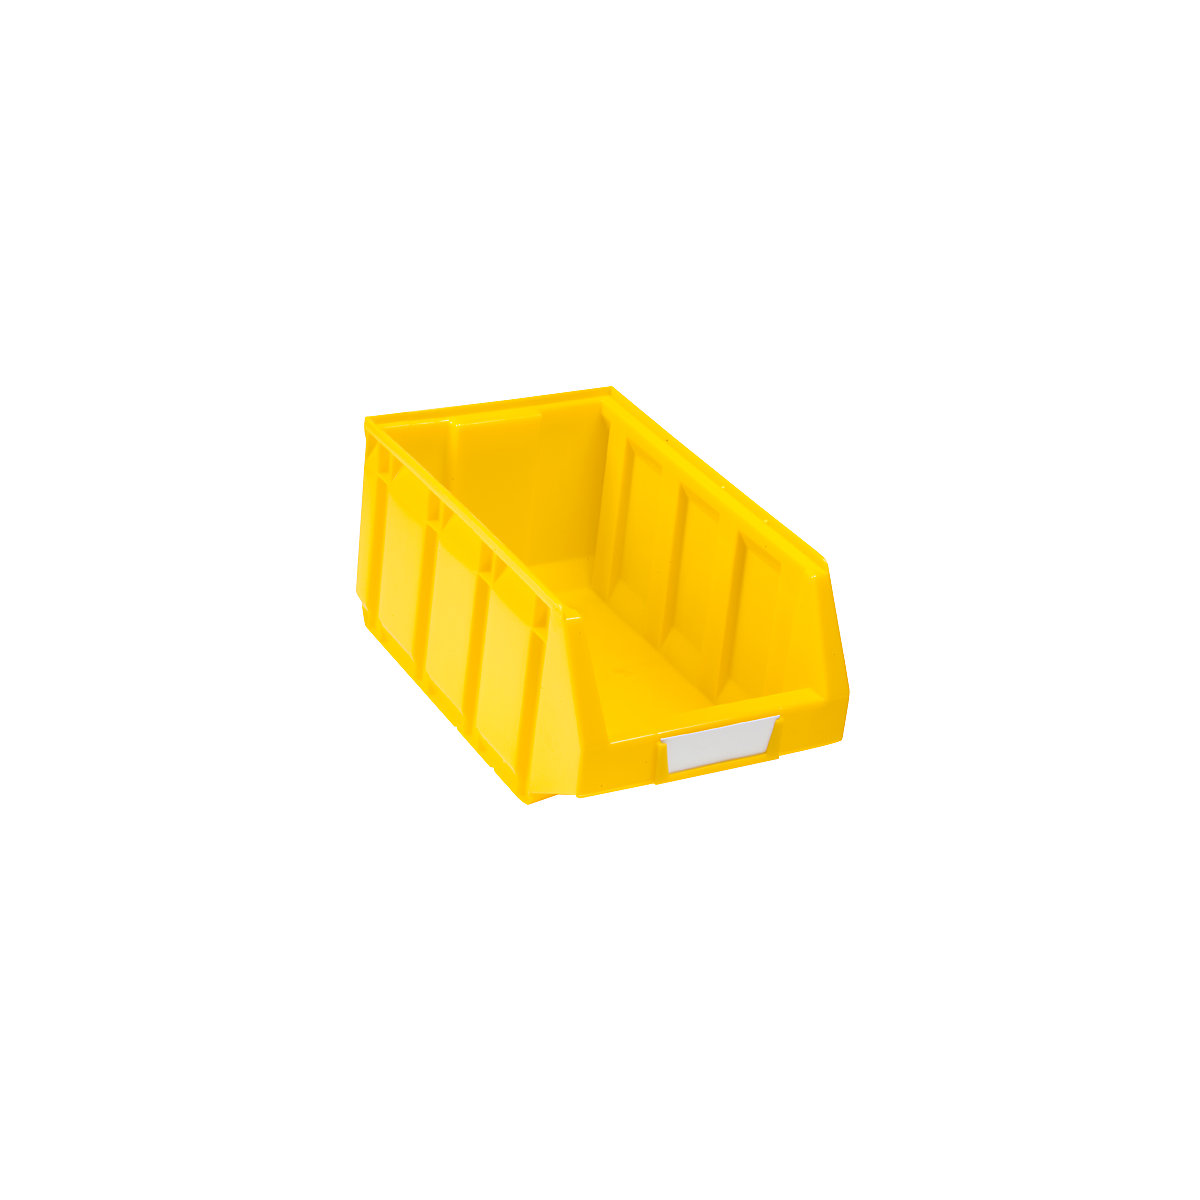 Magazijnbak van polyethyleen, l x b x h = 345 x 205 x 164 mm, geel, VE = 24 stuks